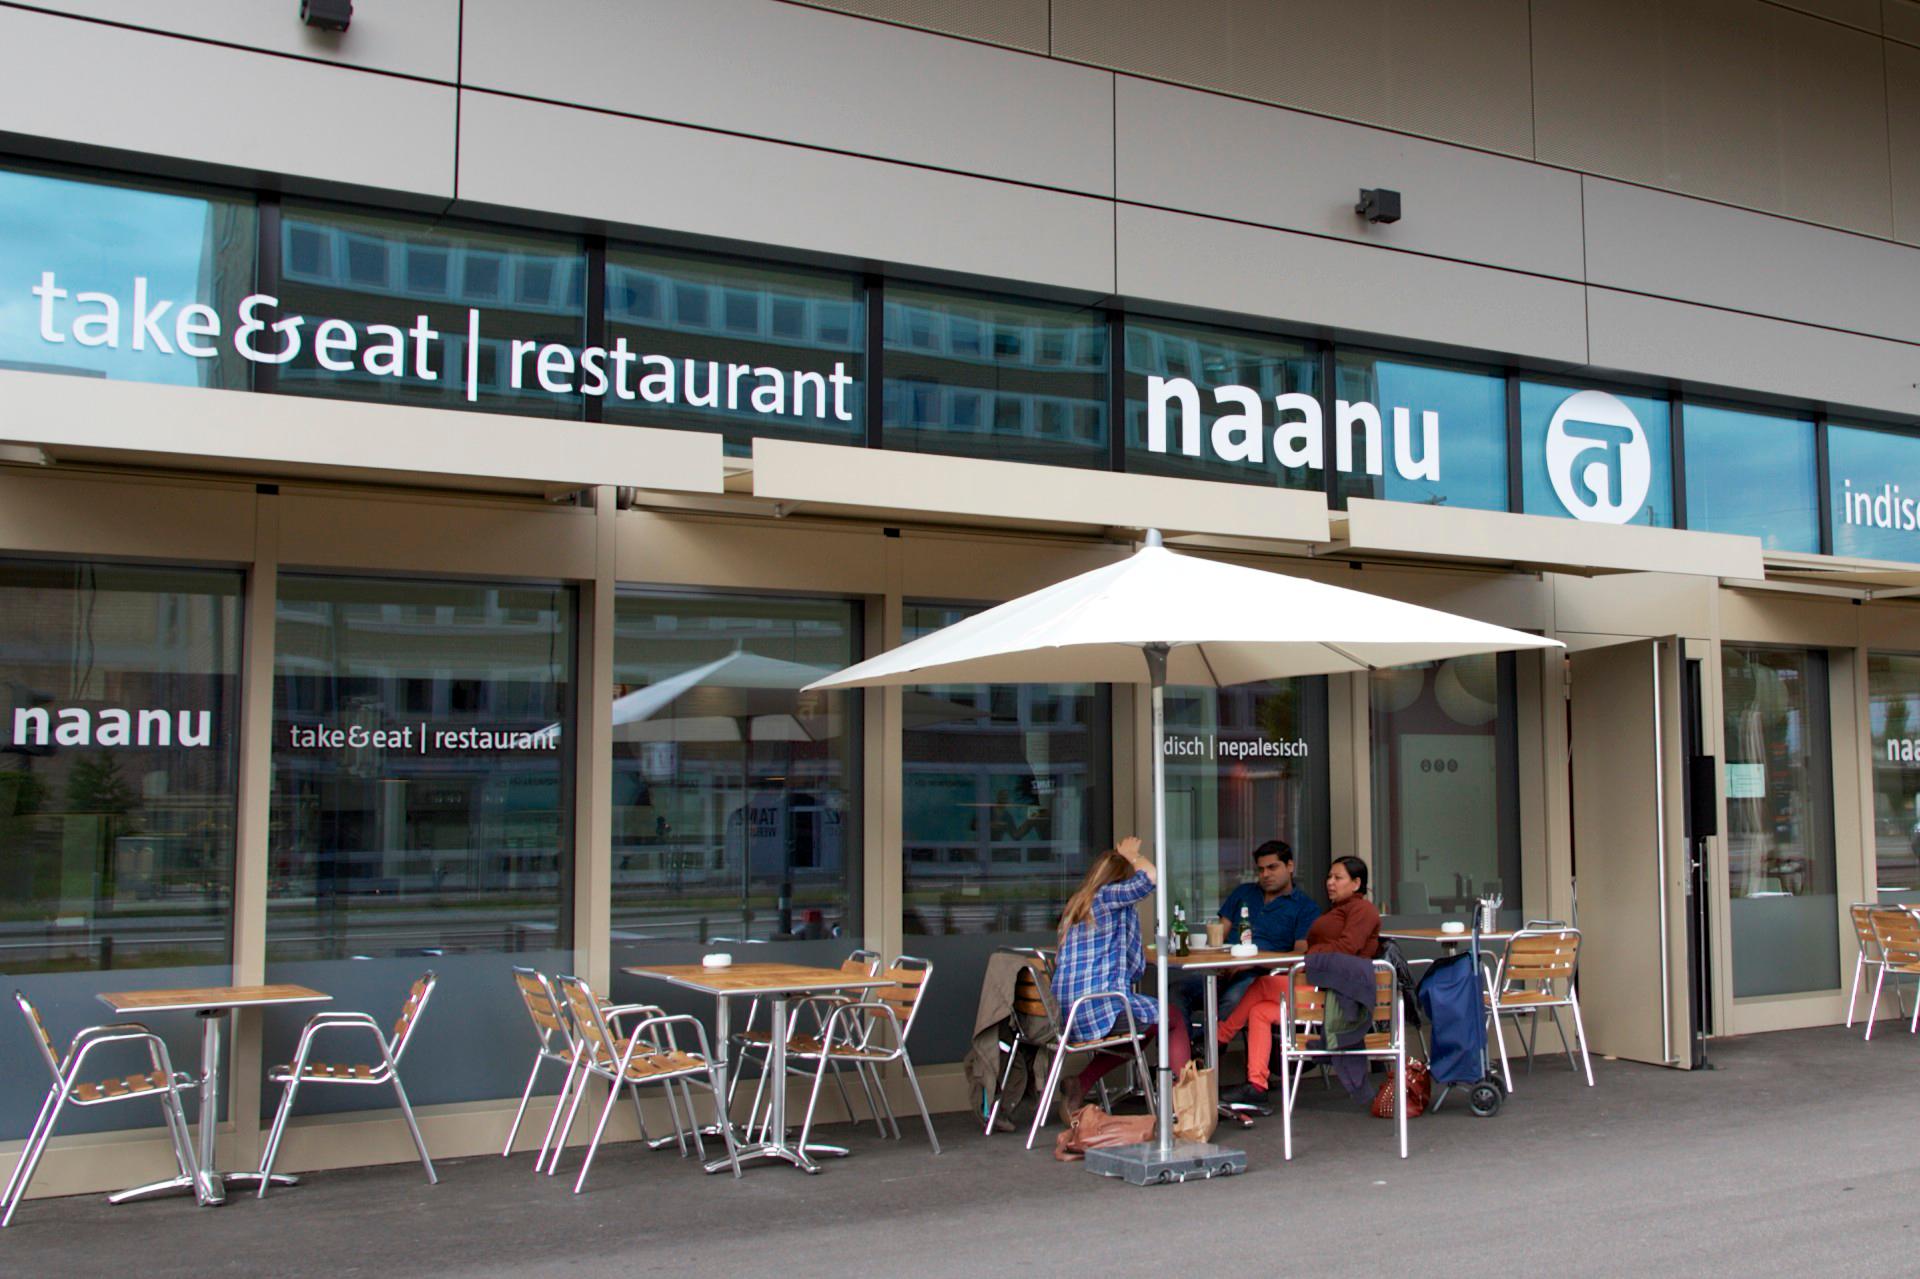 Bilder naanu take&eat / restaurant